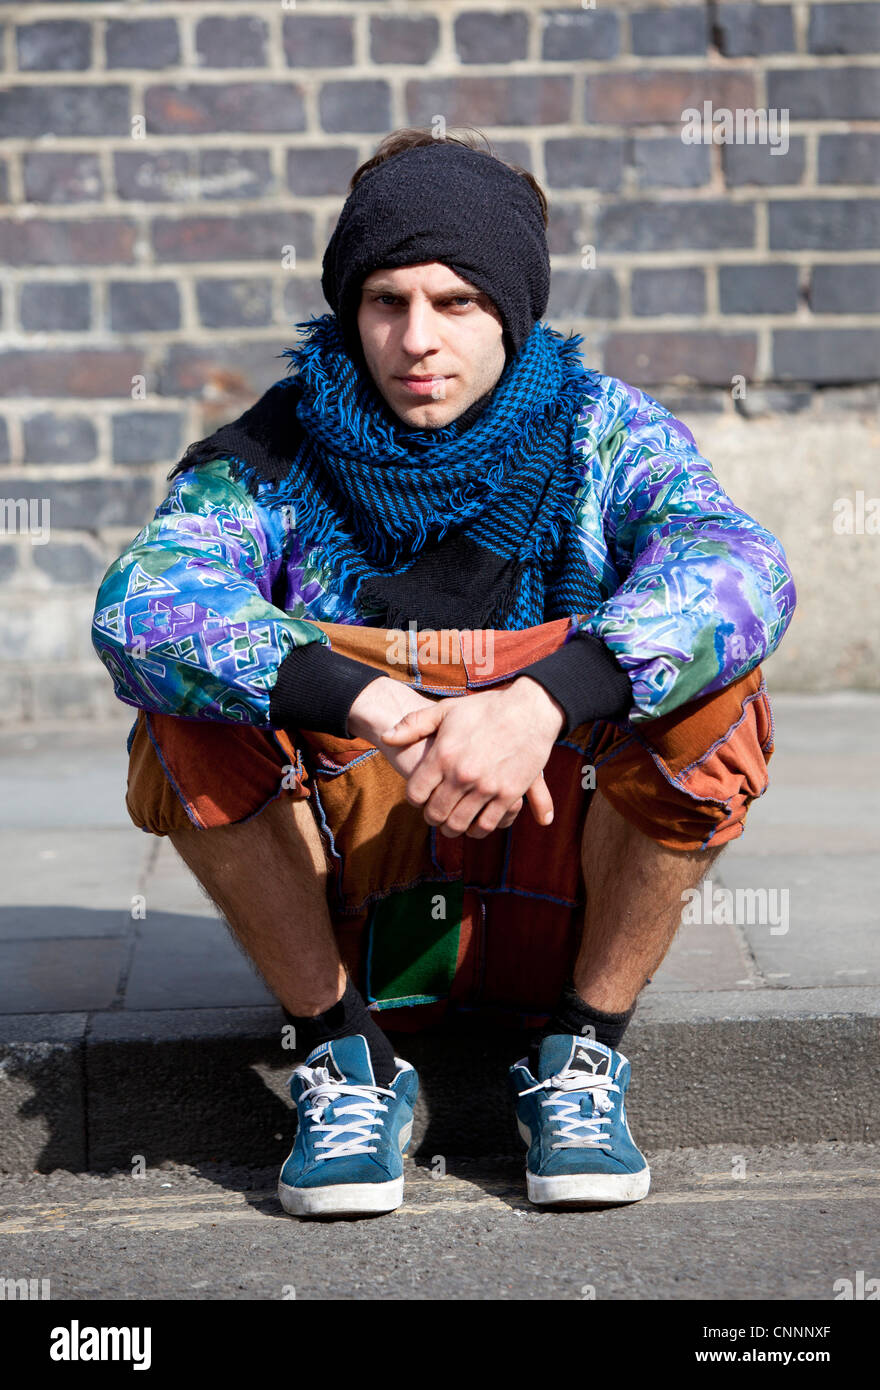 Portrait d'un jeune homme branché assis sur un trottoir, Brick Lane, Londres, Angleterre, Royaume-Uni. Banque D'Images